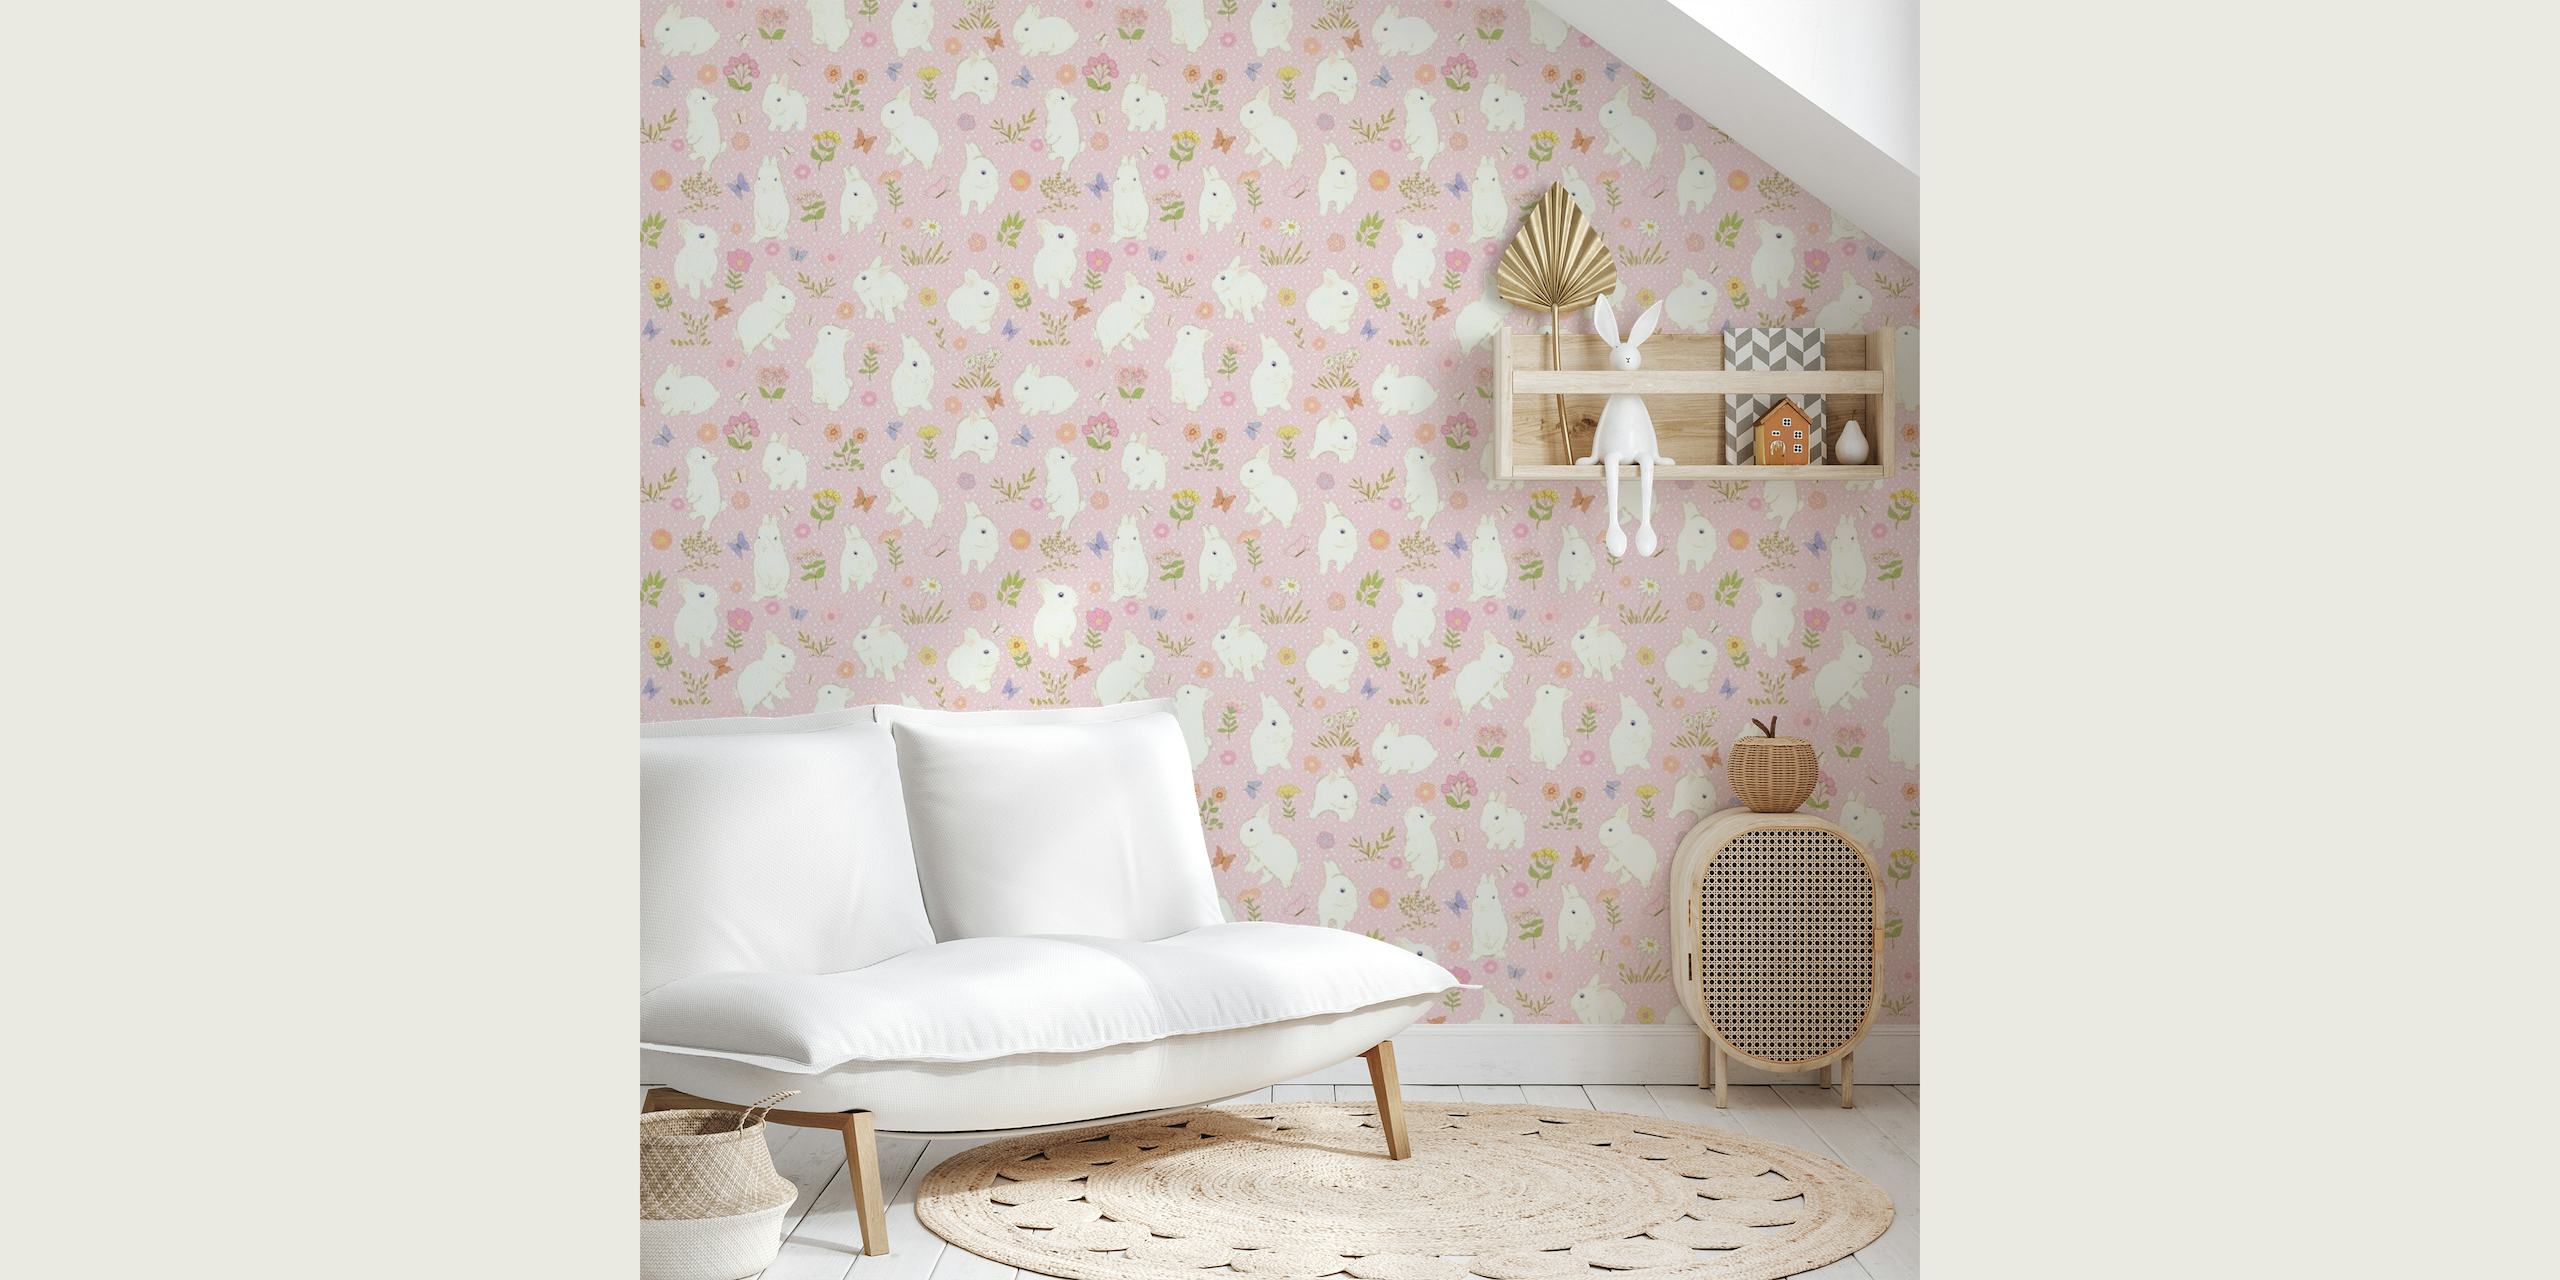 Simpatici disegni di coniglietti bianchi su una parete con sfondo rosa